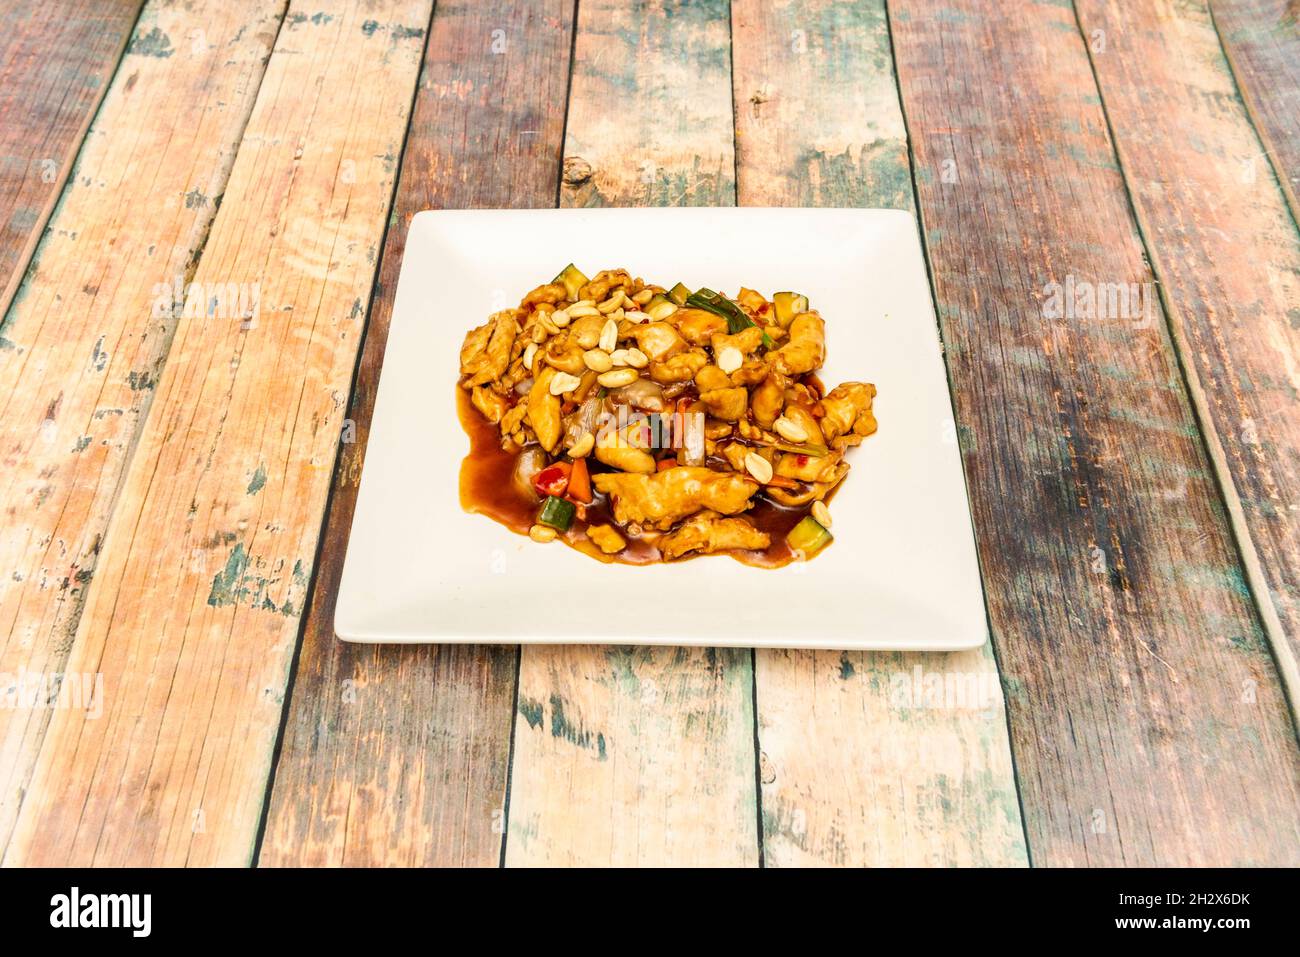 Typisches chinesisches Rezept von gehacktem Kung pao-Huhn mit Nüssen, Wok-Gemüse  und Sojasauce Stockfotografie - Alamy